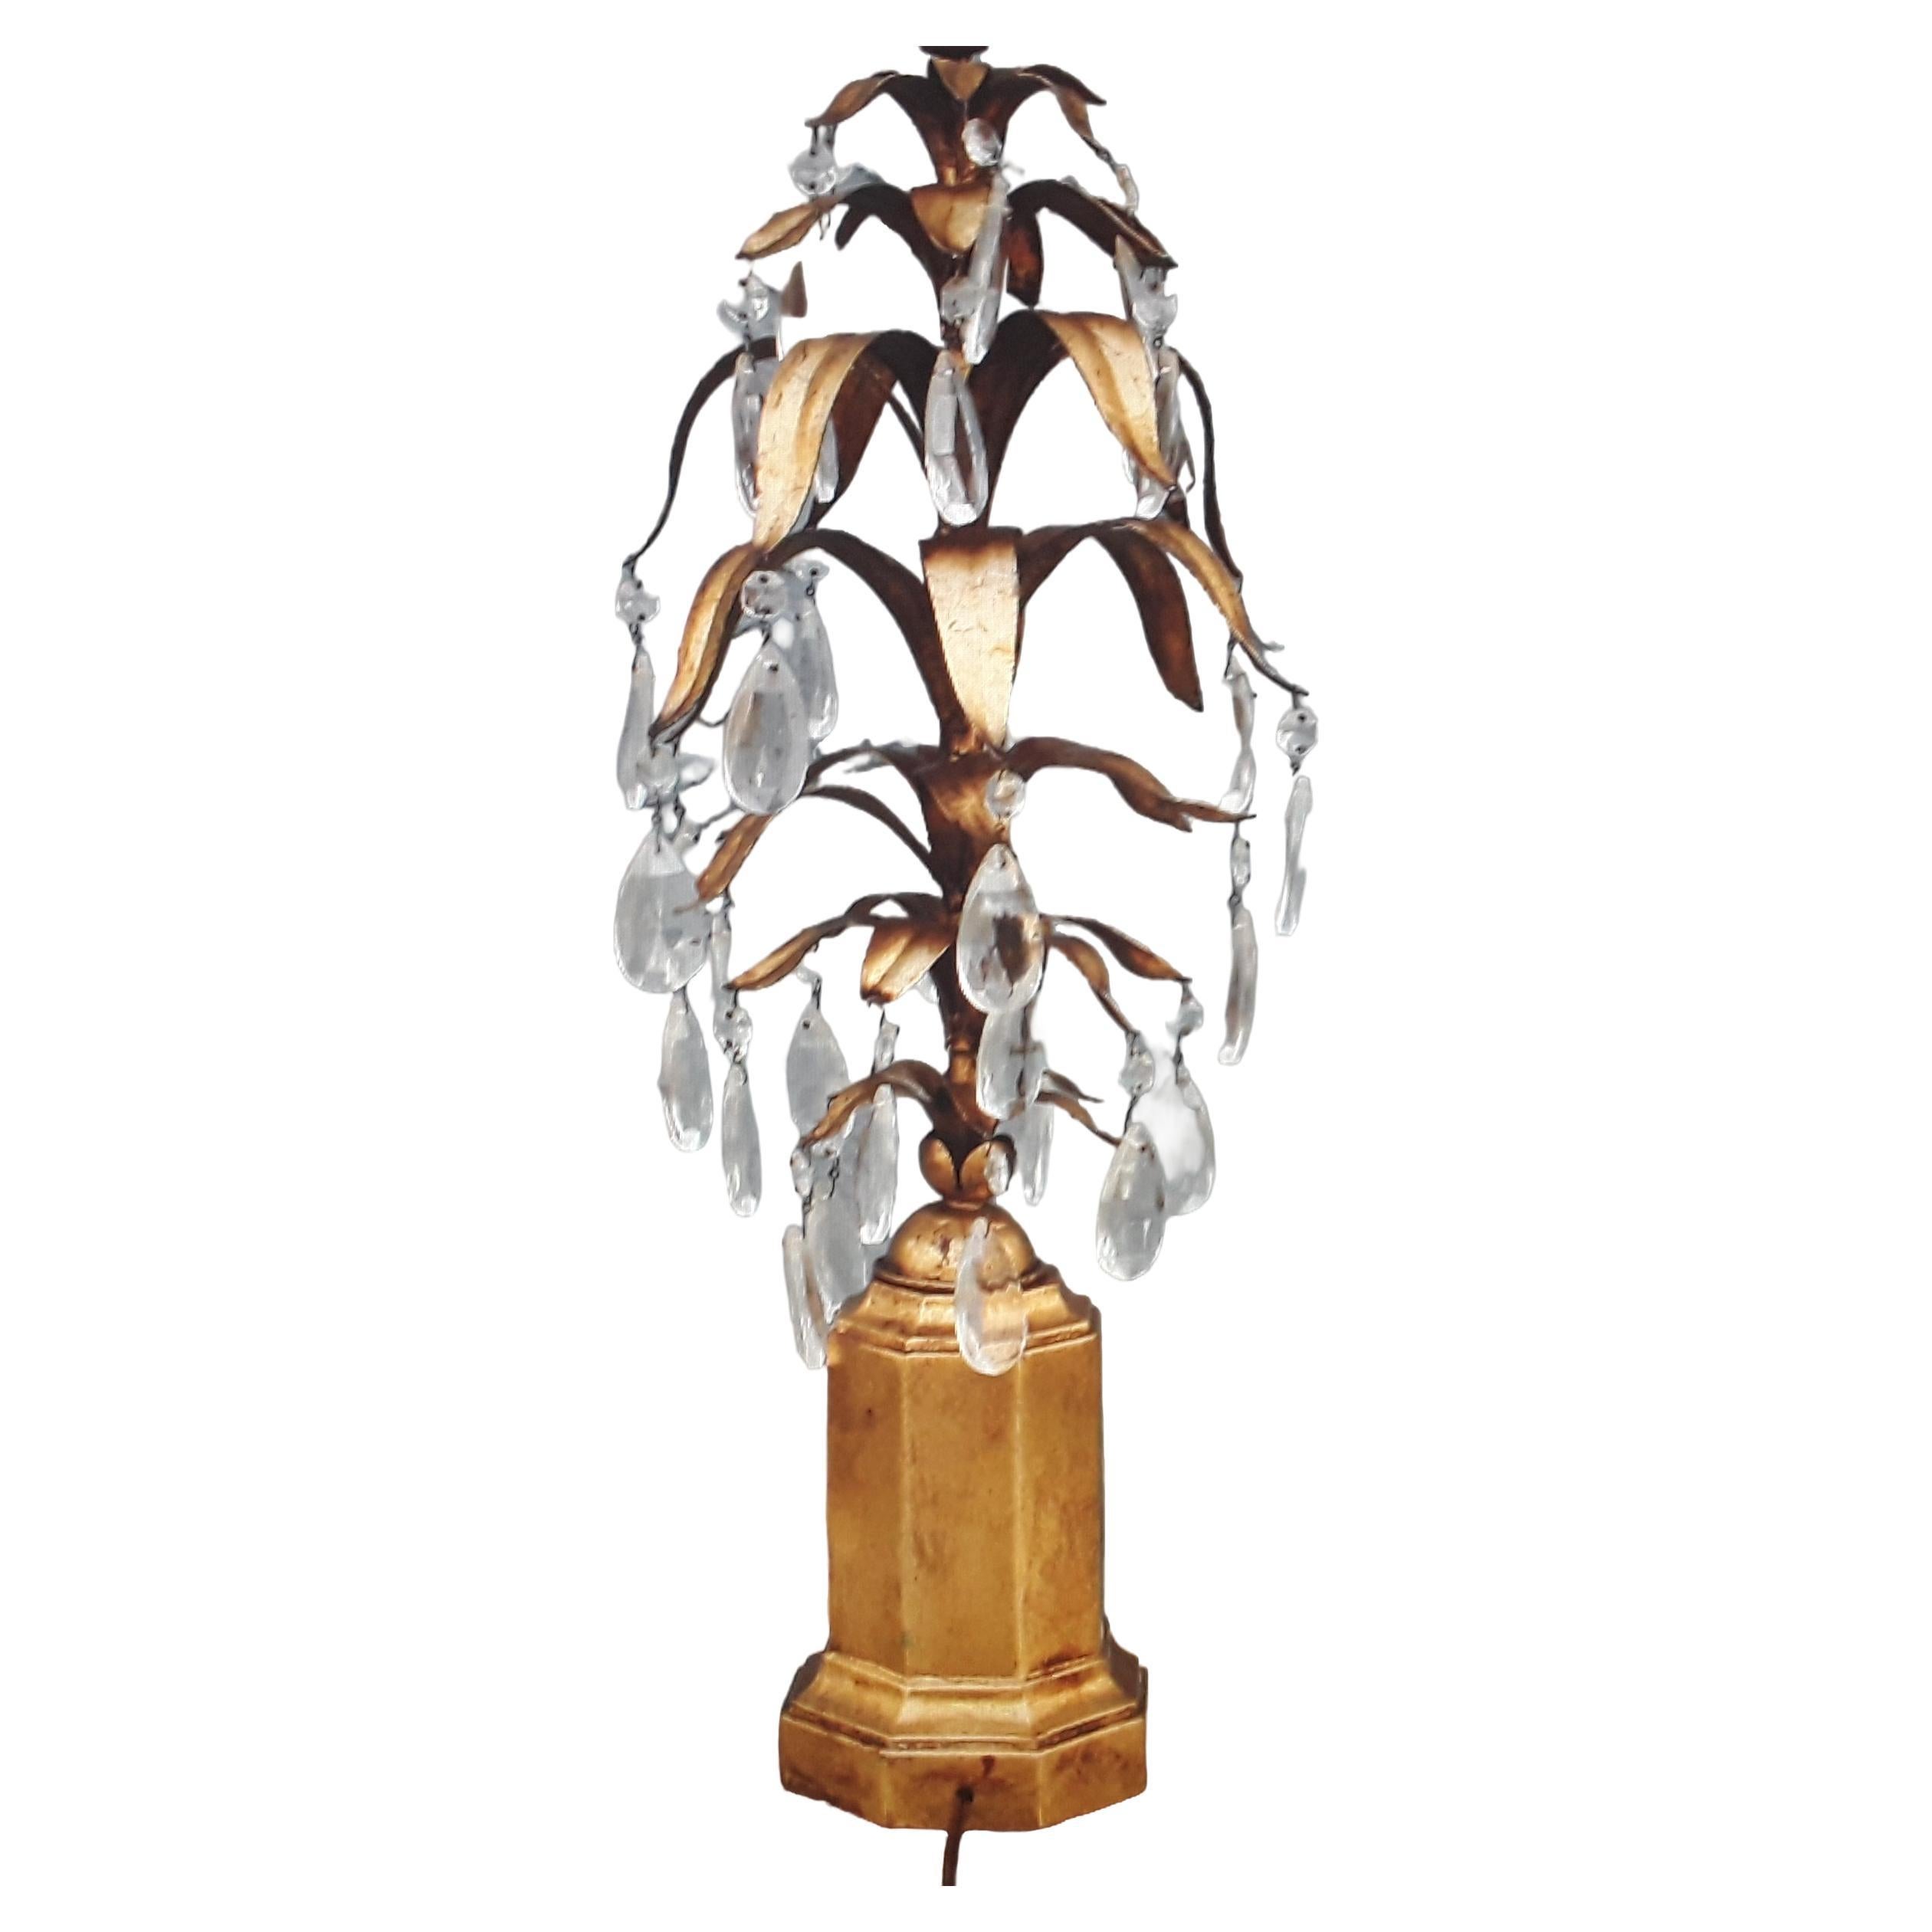 1950er Jahre Italienisch Hollywood Regency Giltwood Based Crystal/Tole Fern Form Tischlampe